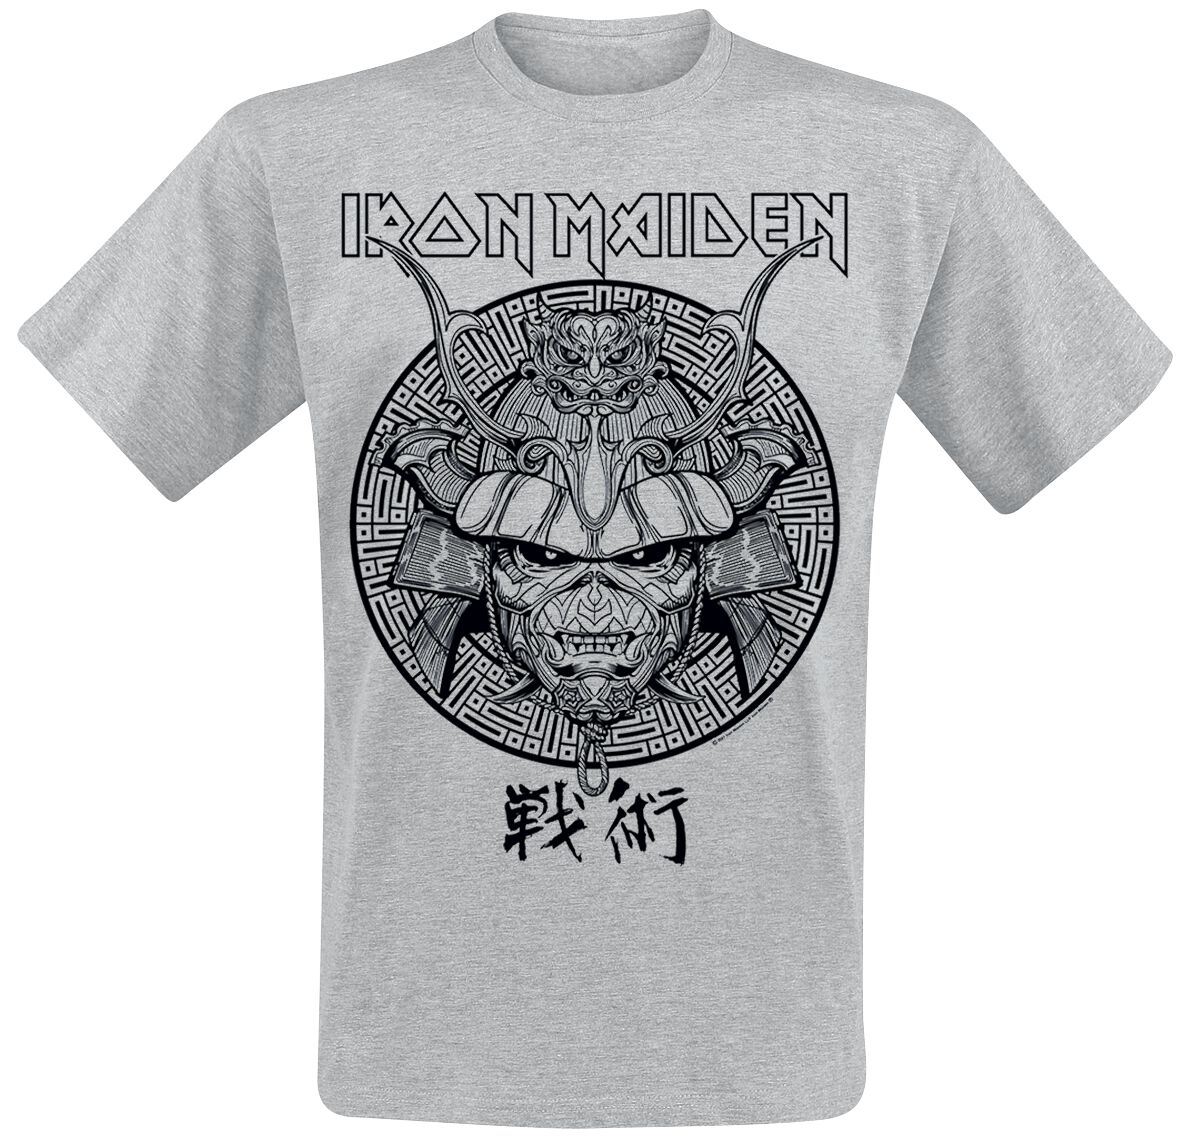 Iron Maiden T-Shirt - Samurai Eddie Black Graphic - S bis XXL - für Männer - Größe XXL - grau  - Lizenziertes Merchandise!